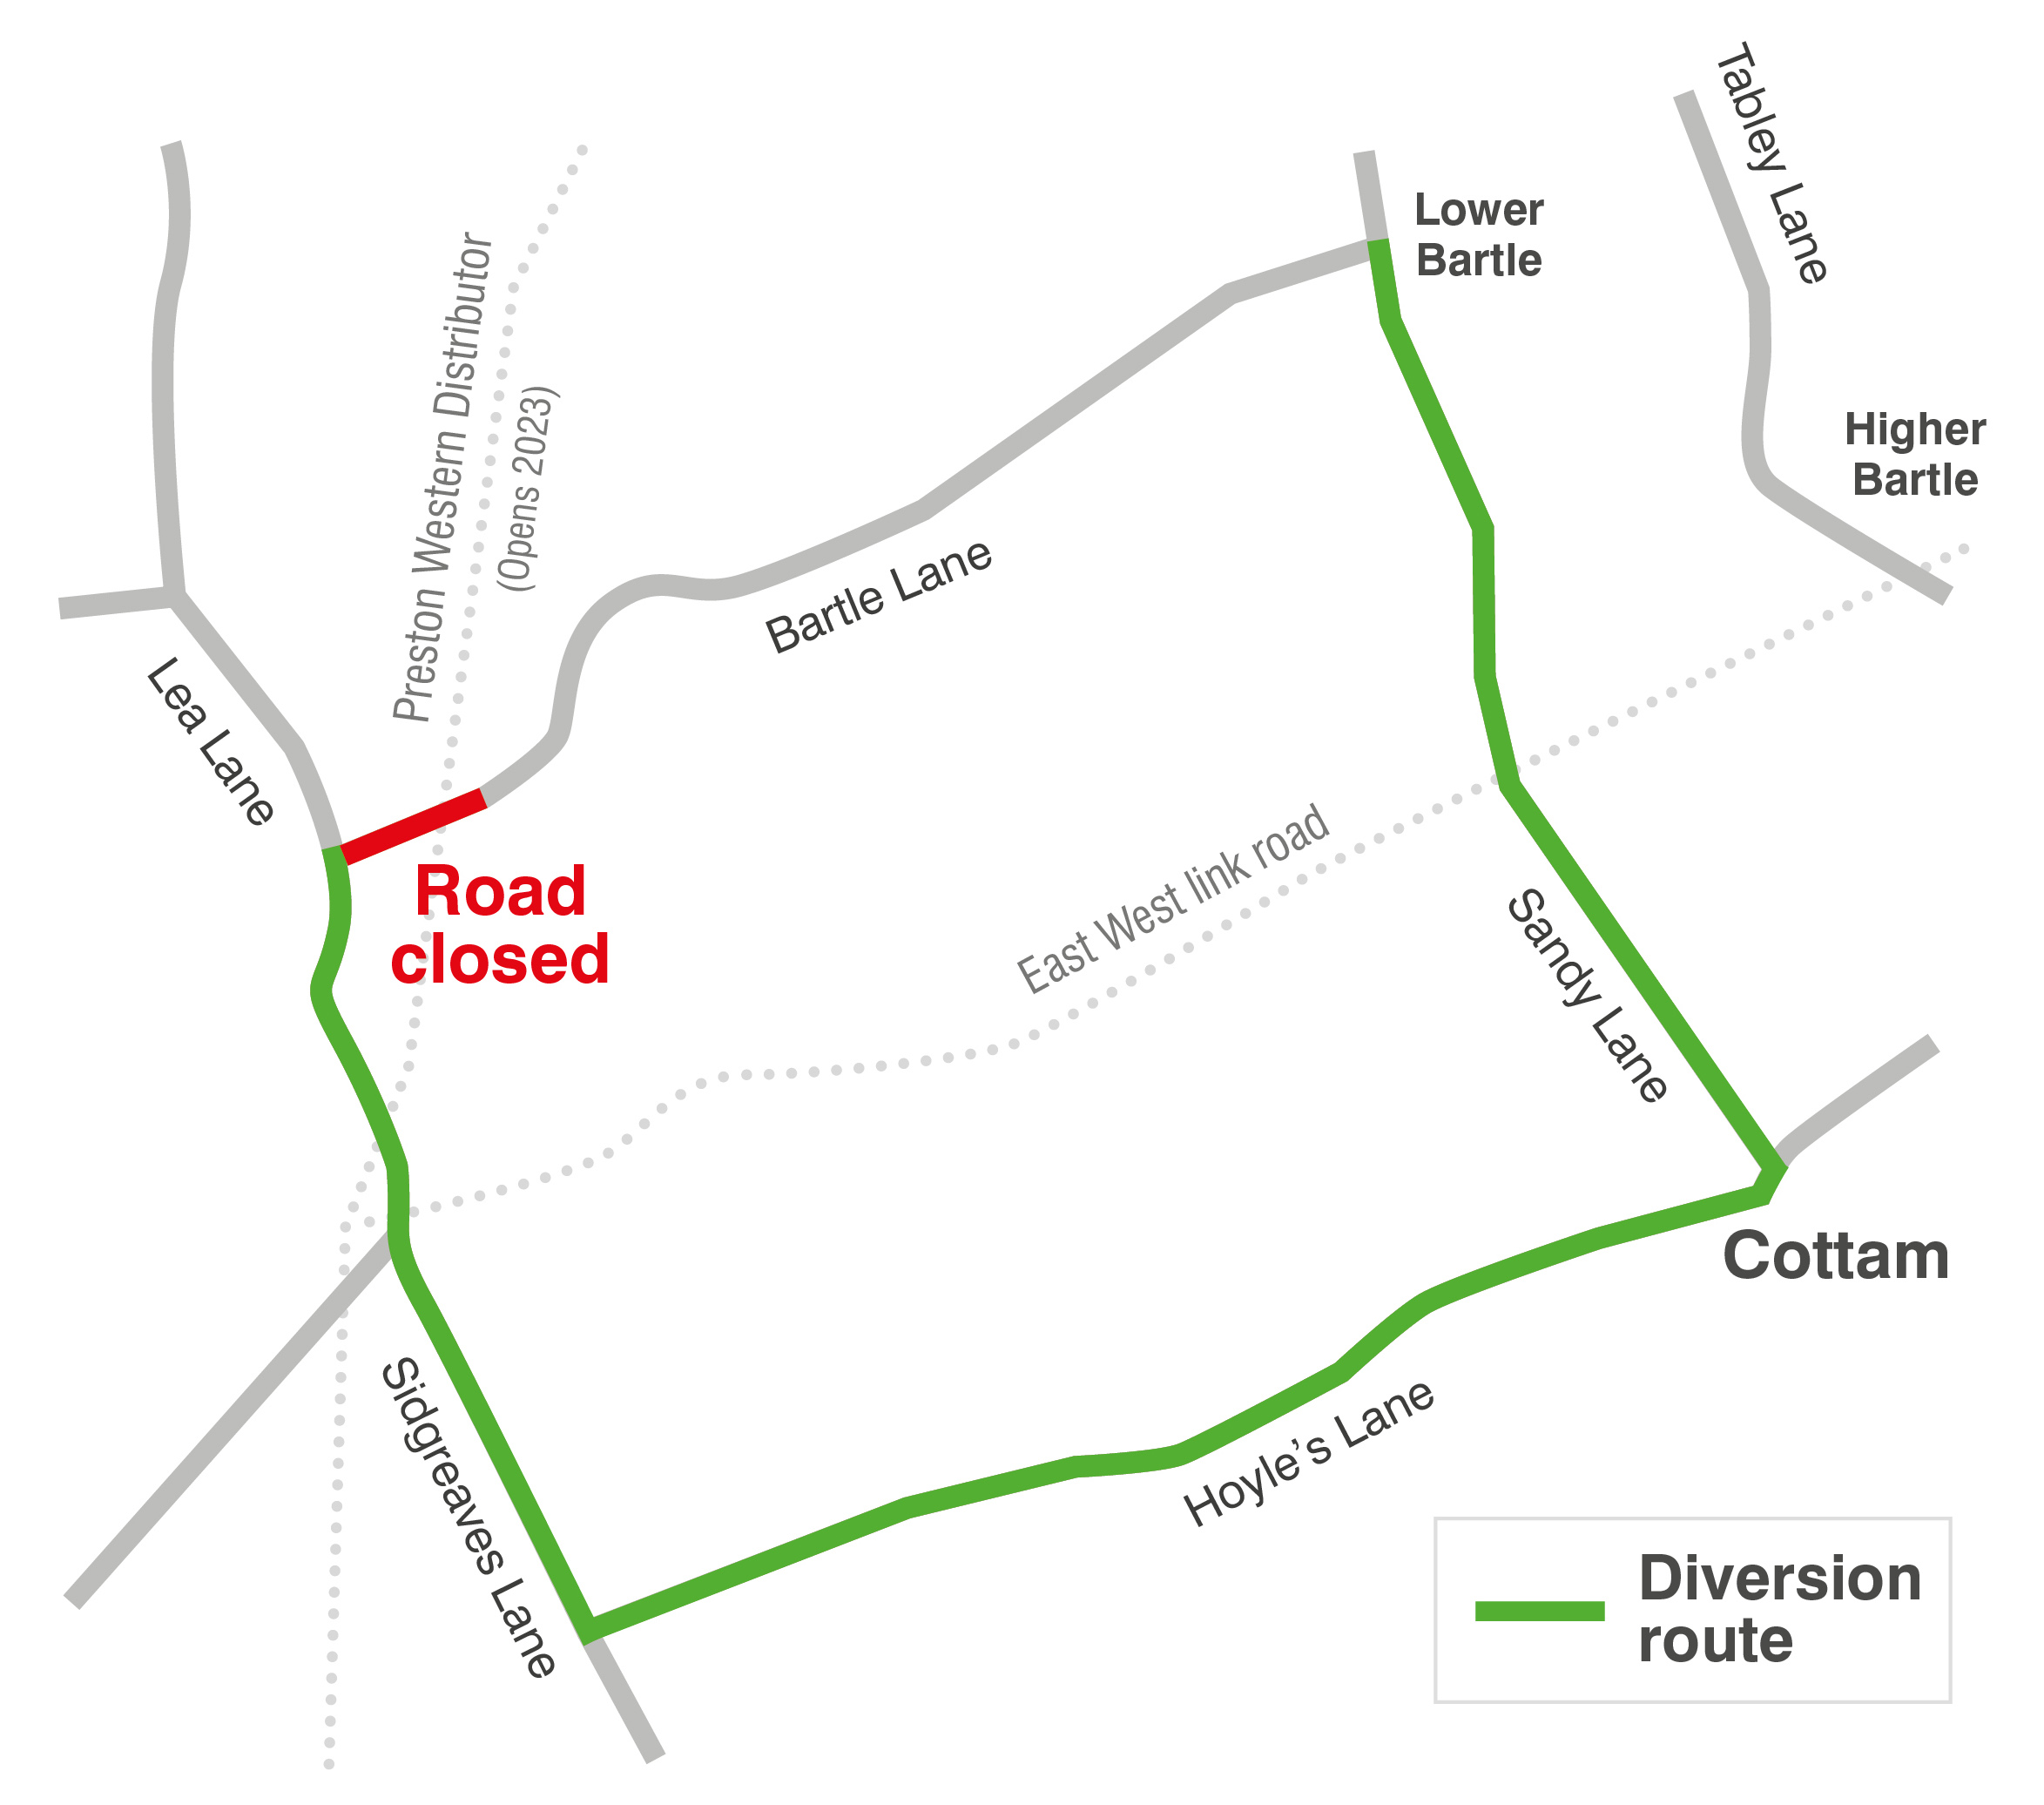 Bartle Lane closure - diversion route